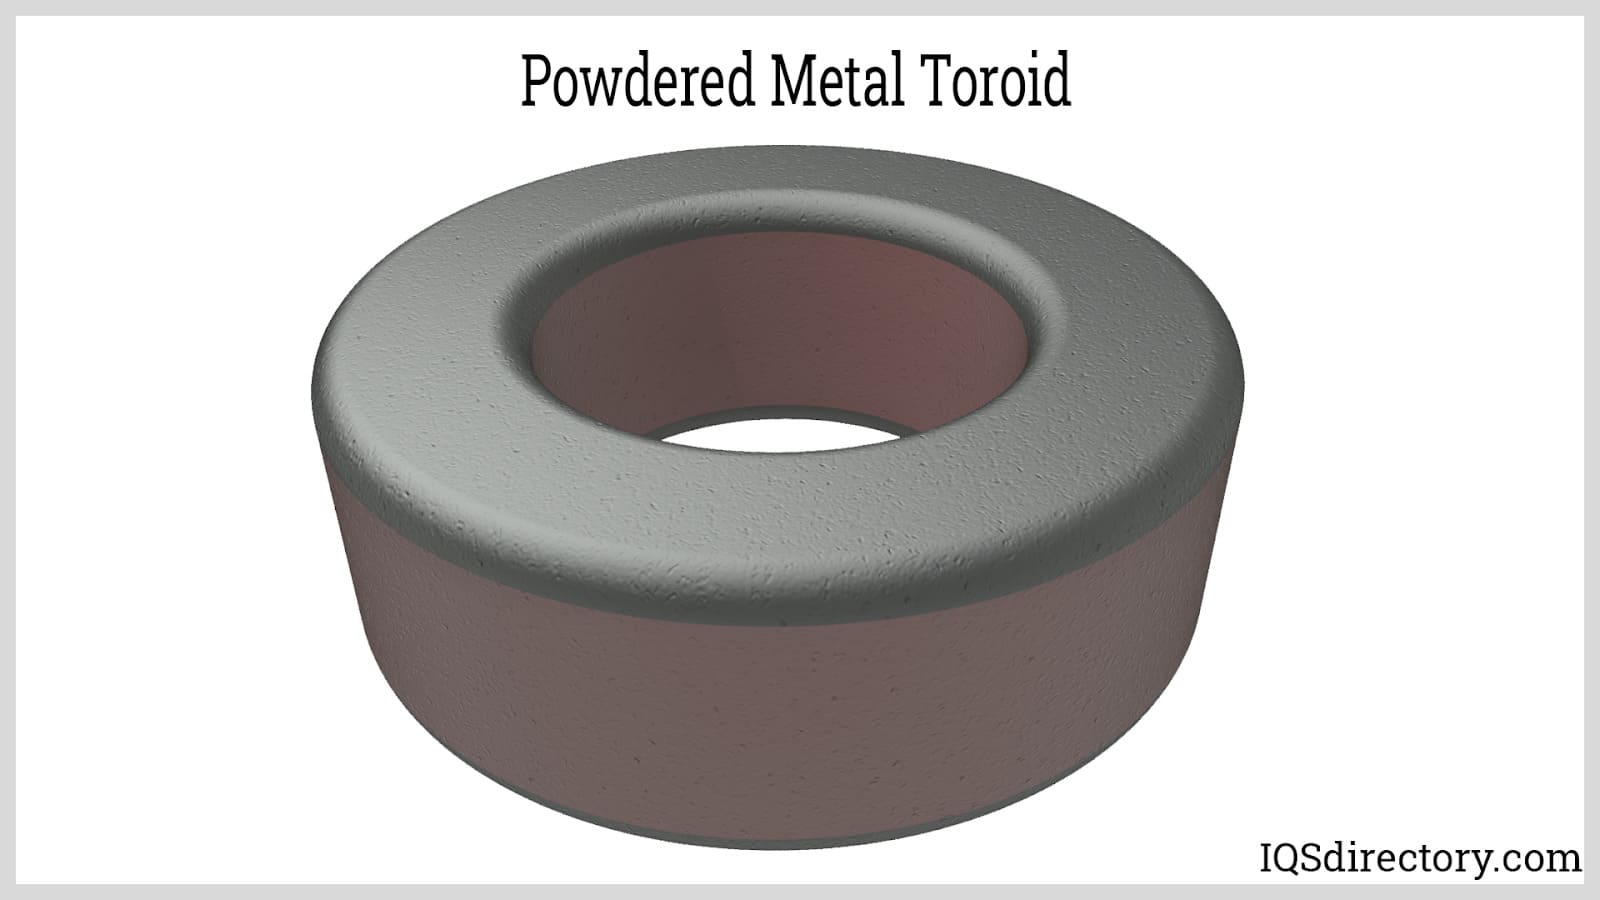 Powdered Metal Toroid